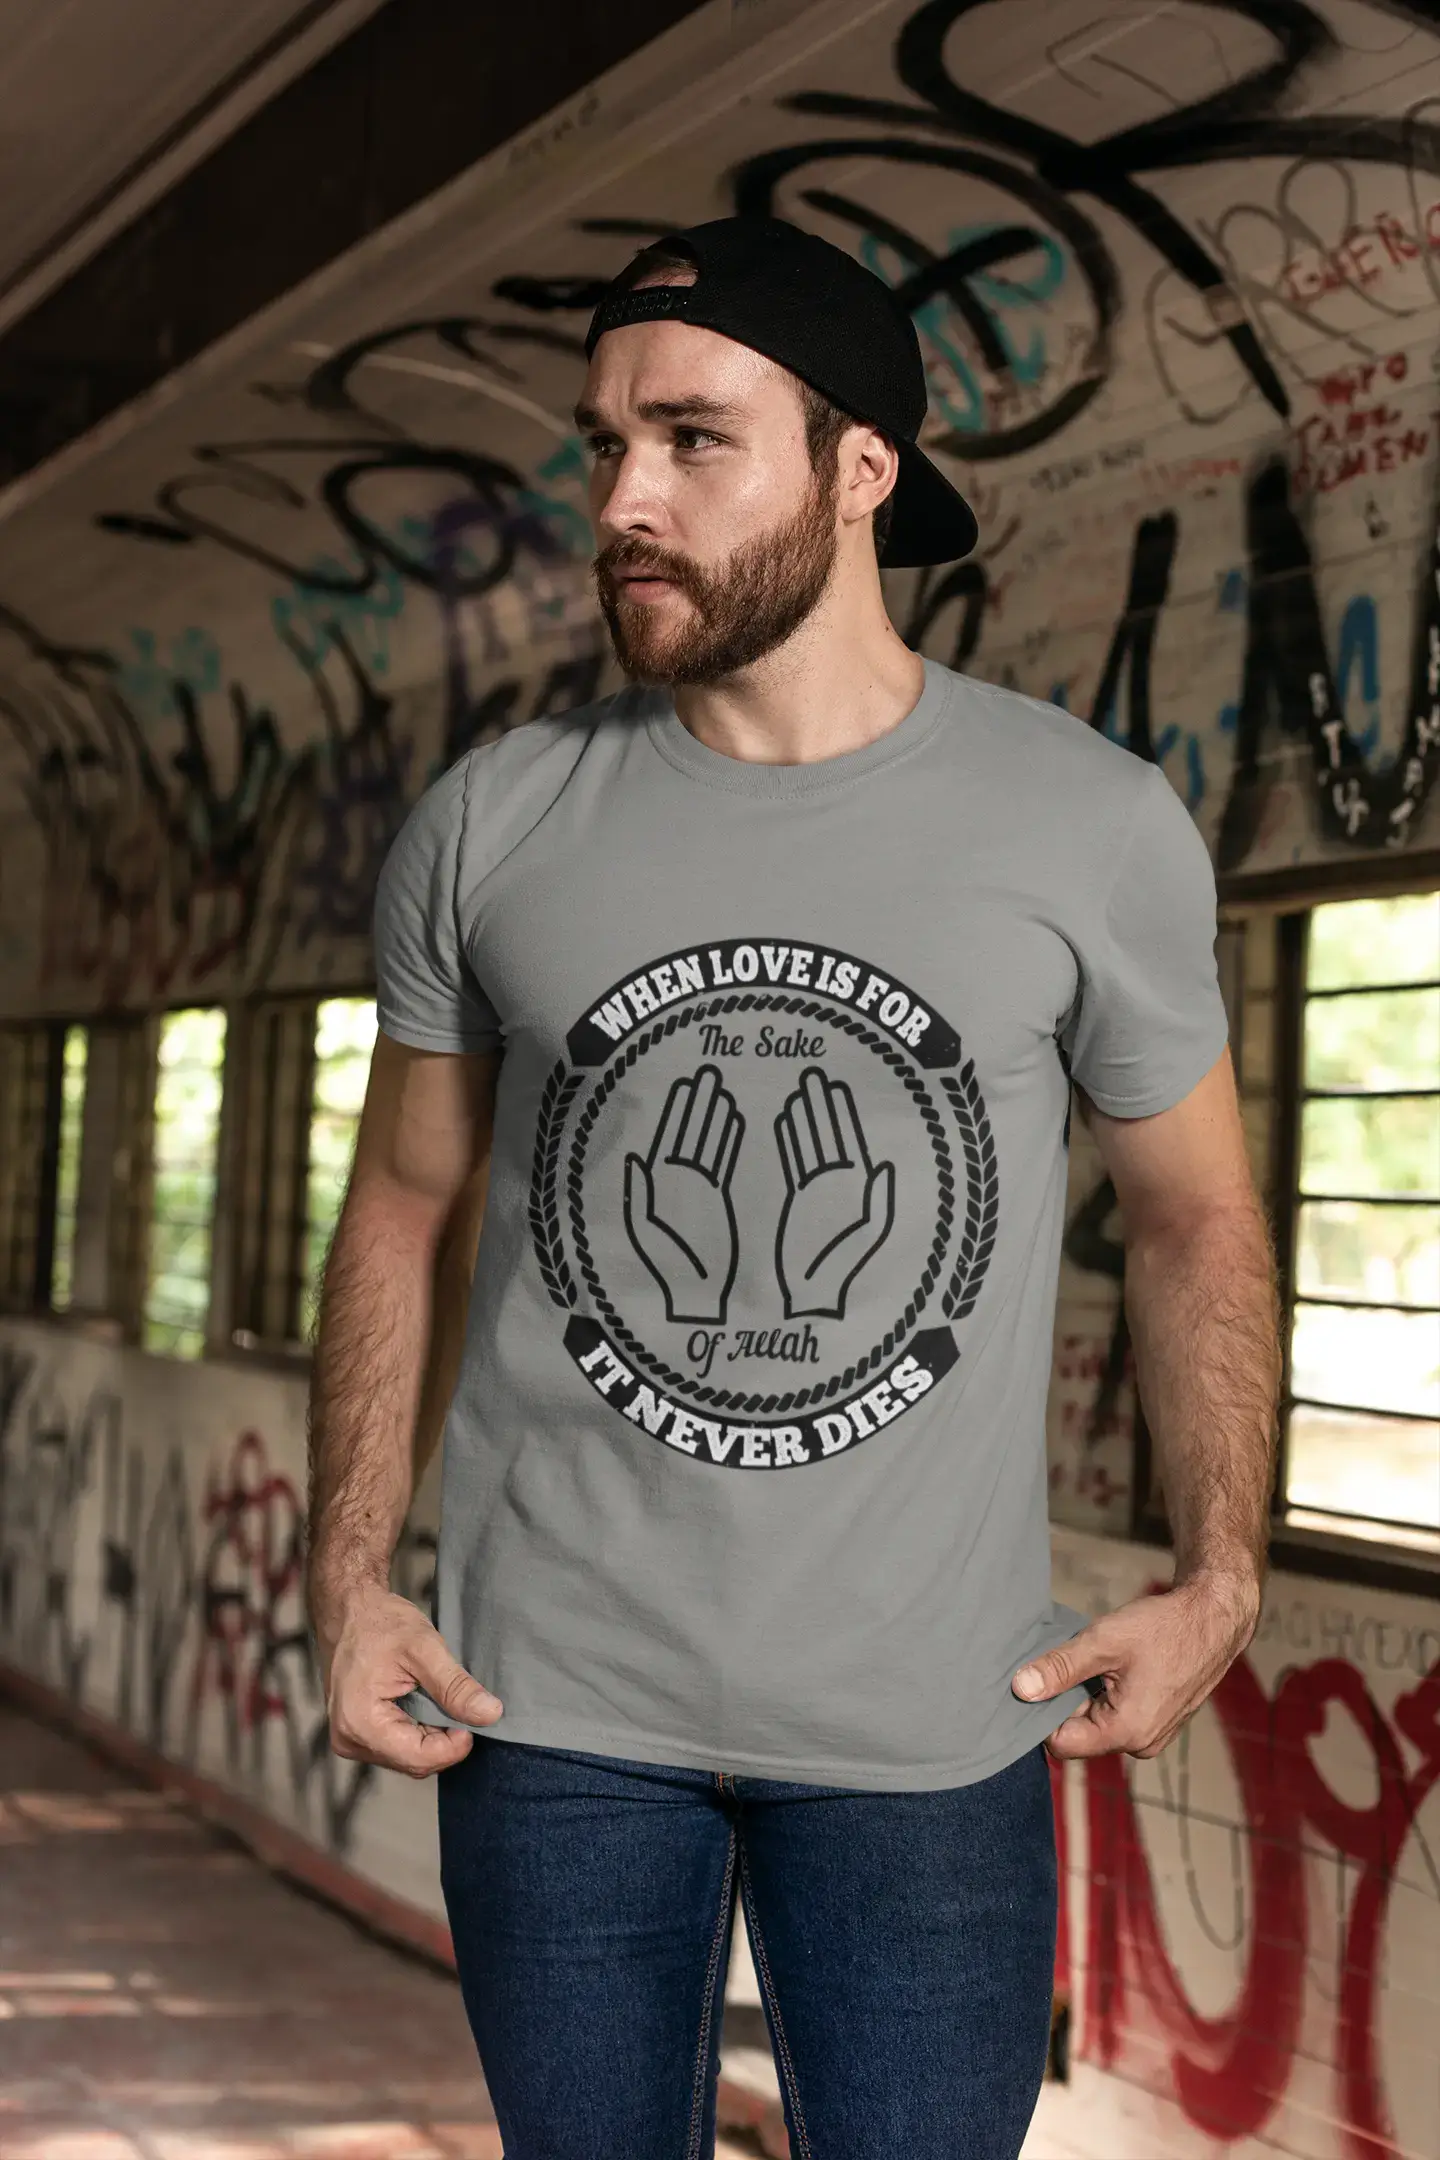 ULTRABASIC Herren T-Shirt The Sake of Allah – It Never Dies – Religiöses T-Shirt